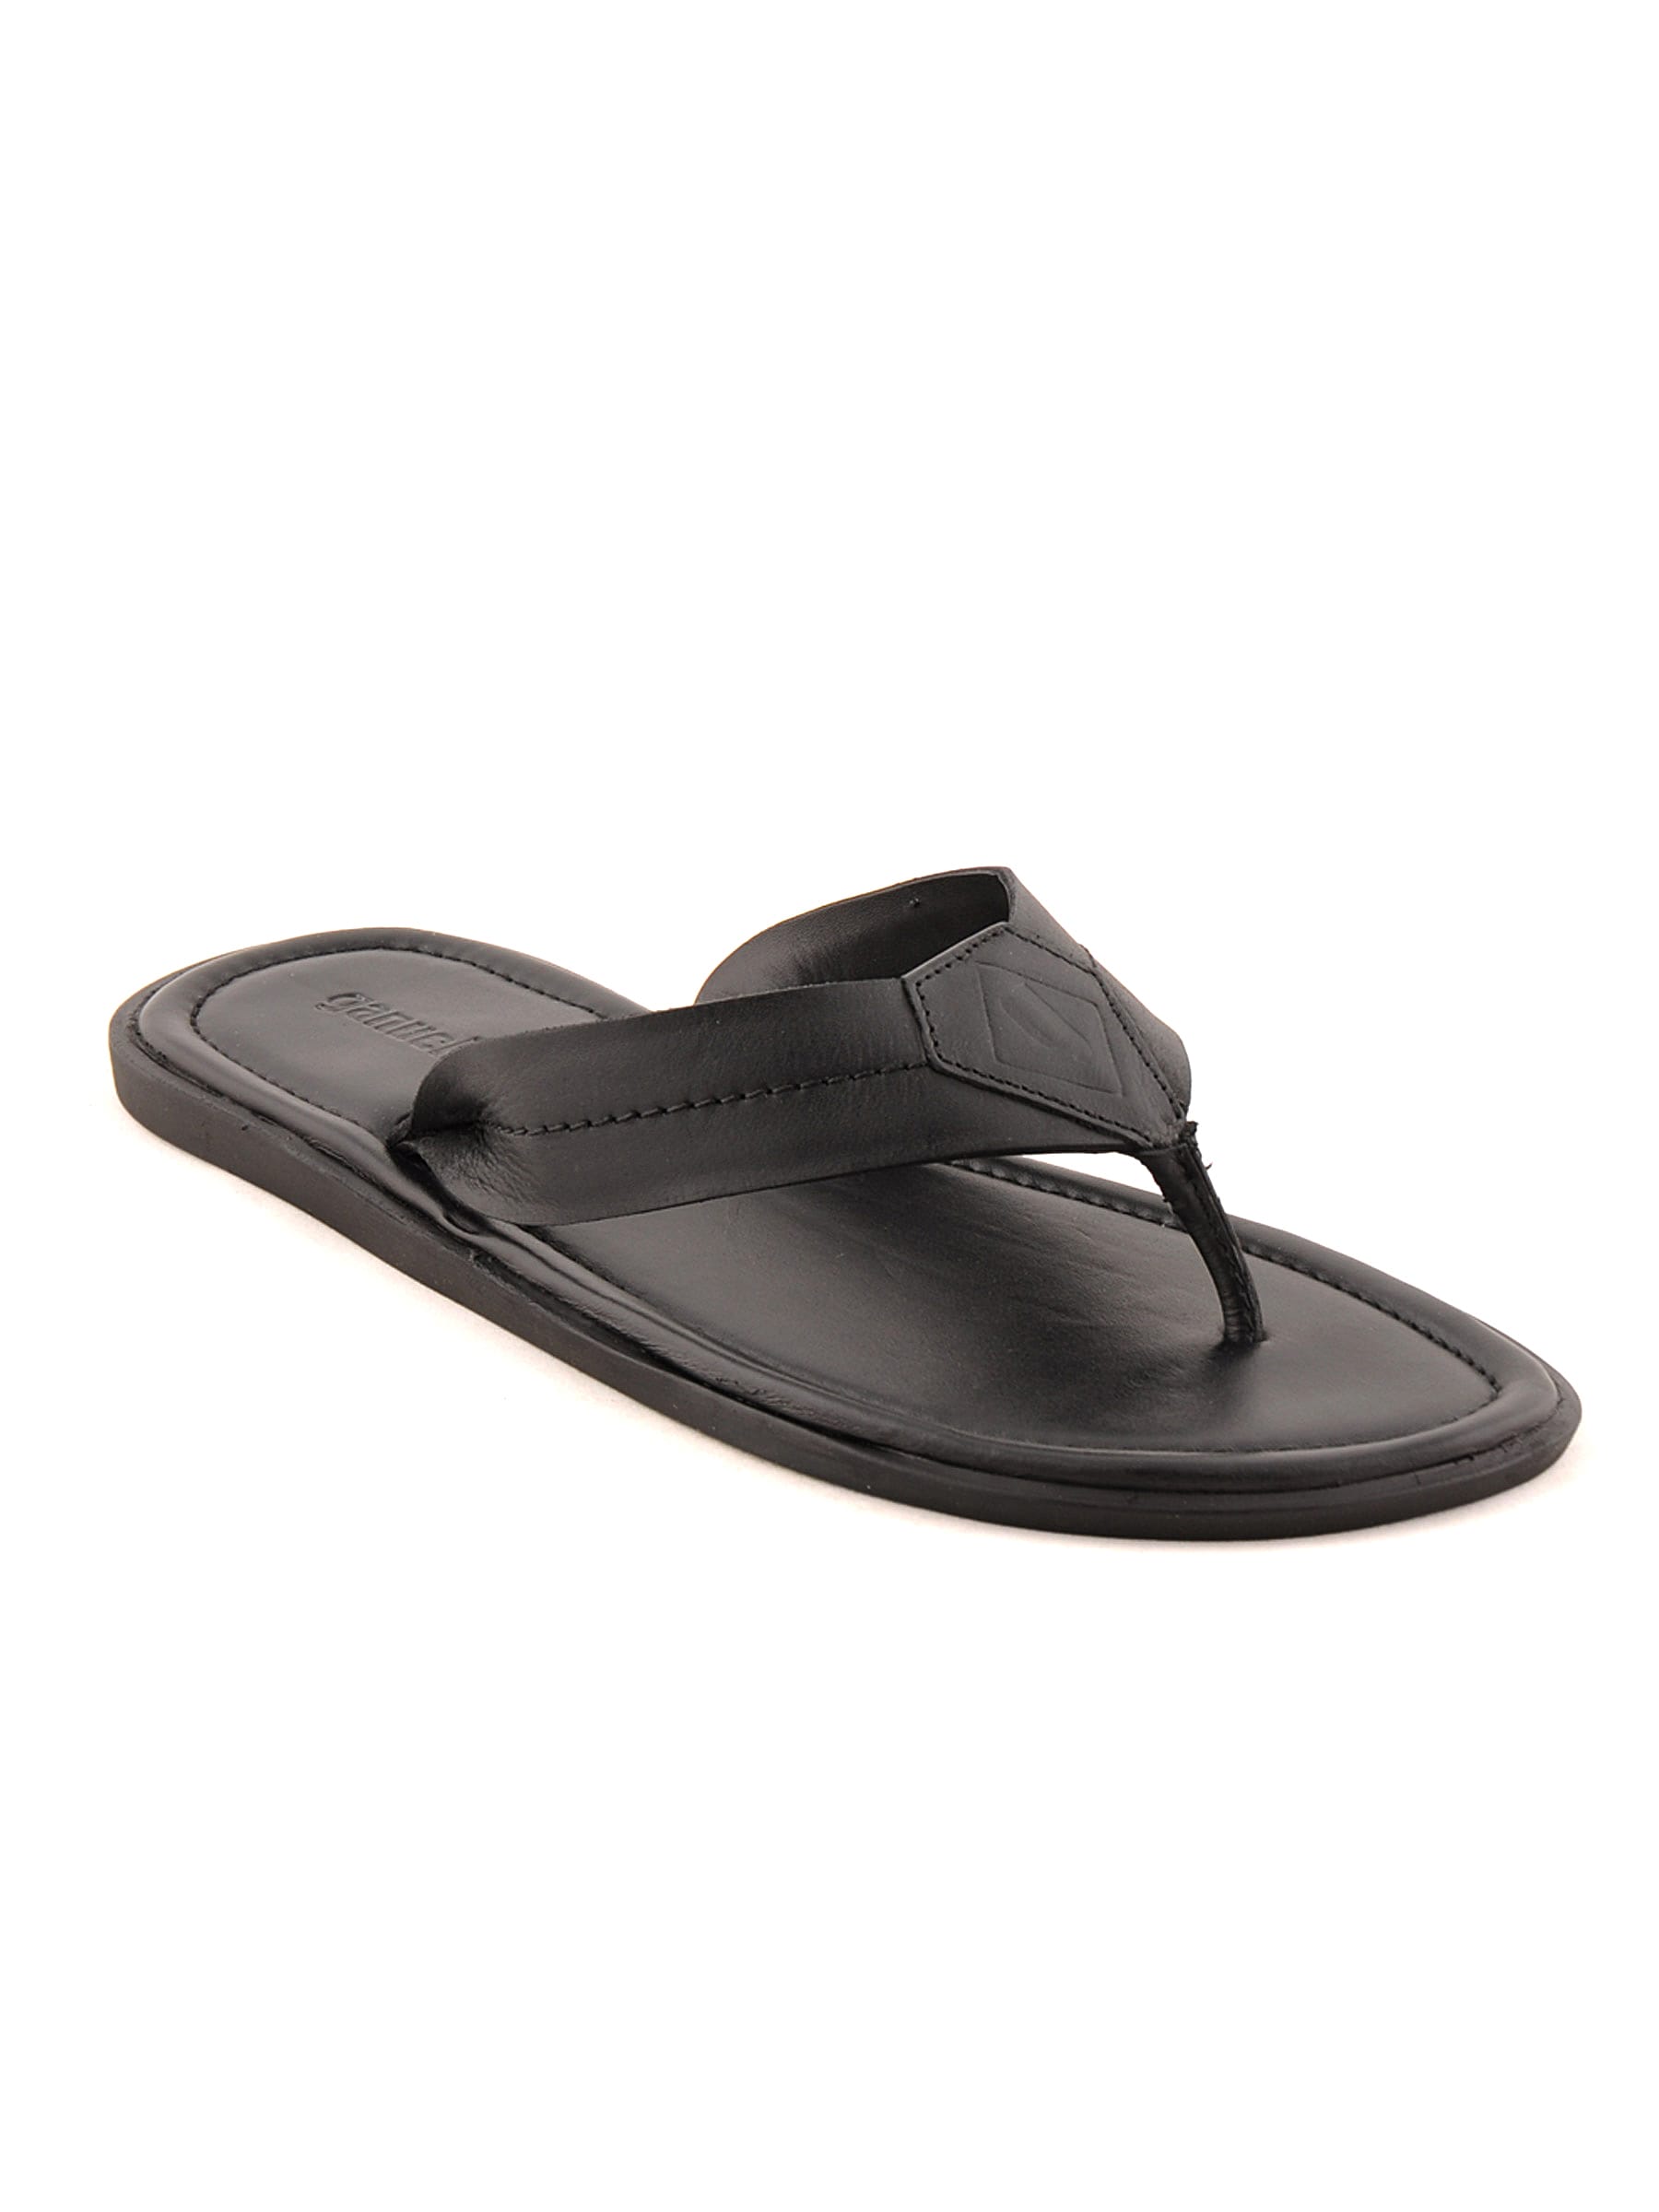 Ganuchi Men Casual Black Sandals